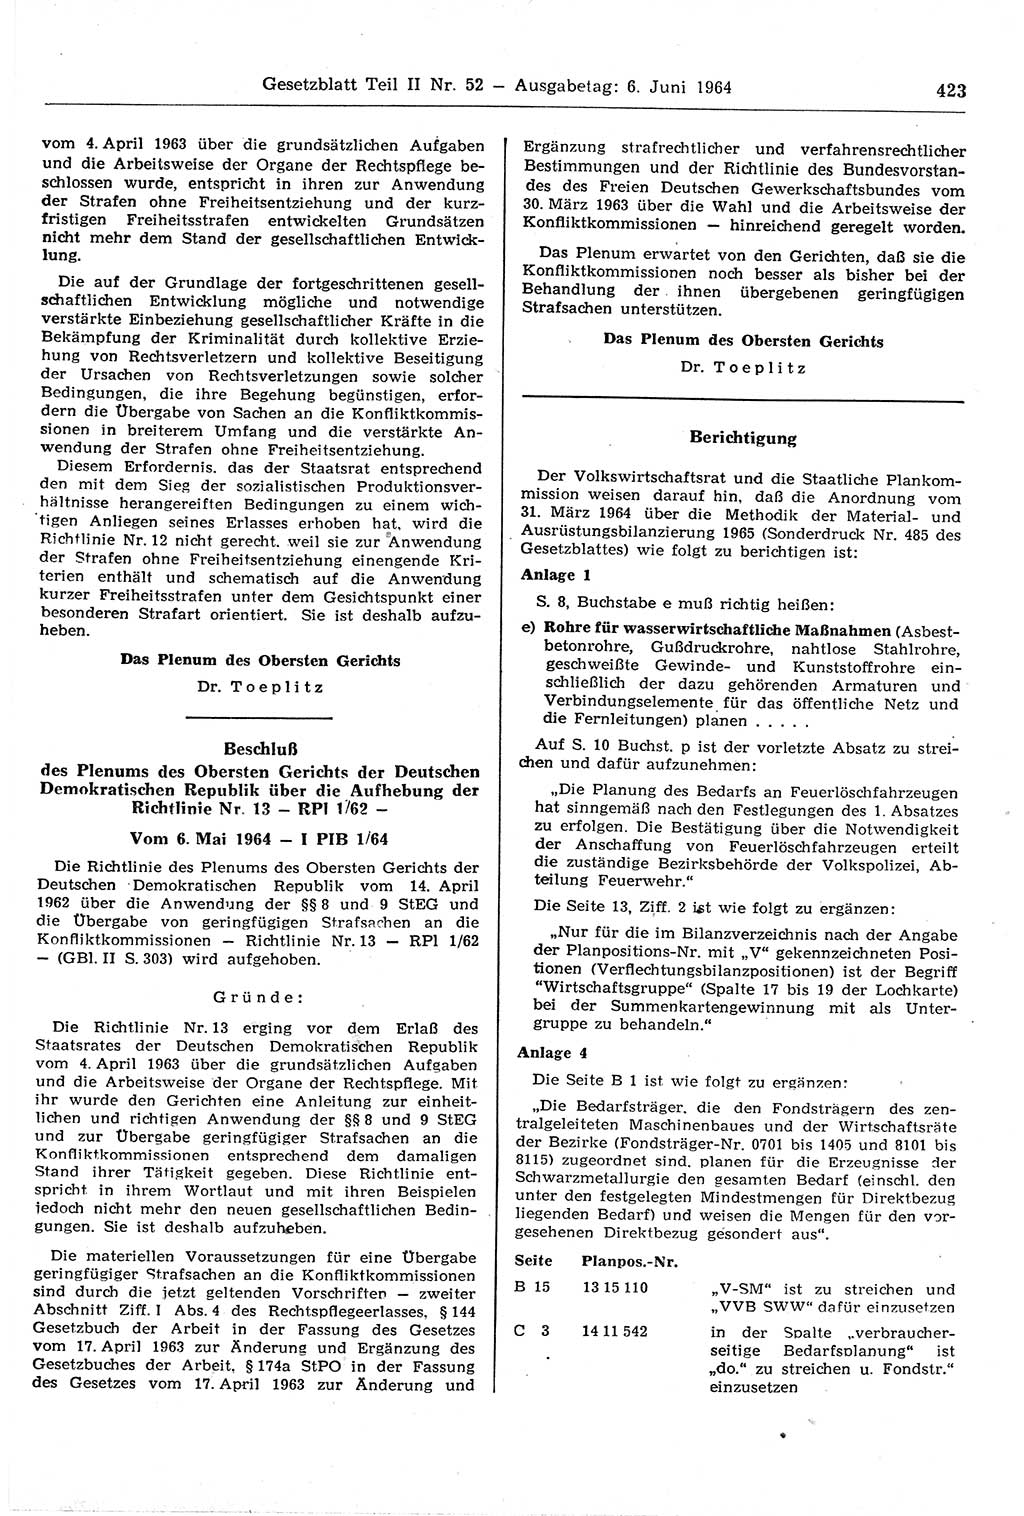 Gesetzblatt (GBl.) der Deutschen Demokratischen Republik (DDR) Teil ⅠⅠ 1964, Seite 423 (GBl. DDR ⅠⅠ 1964, S. 423)